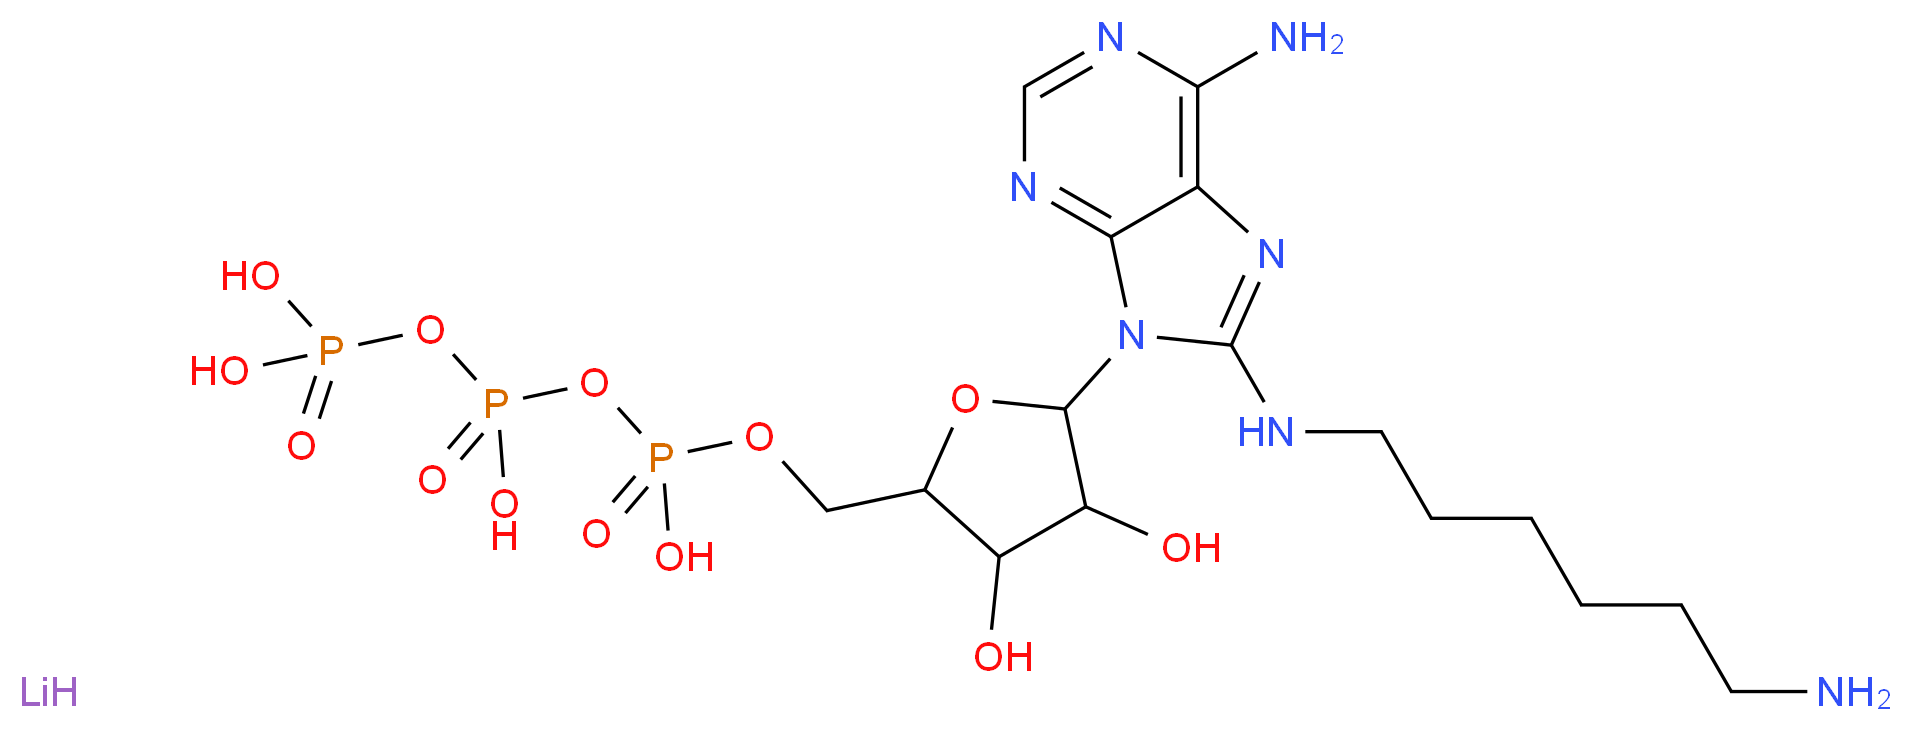 102029-46-9 molecular structure